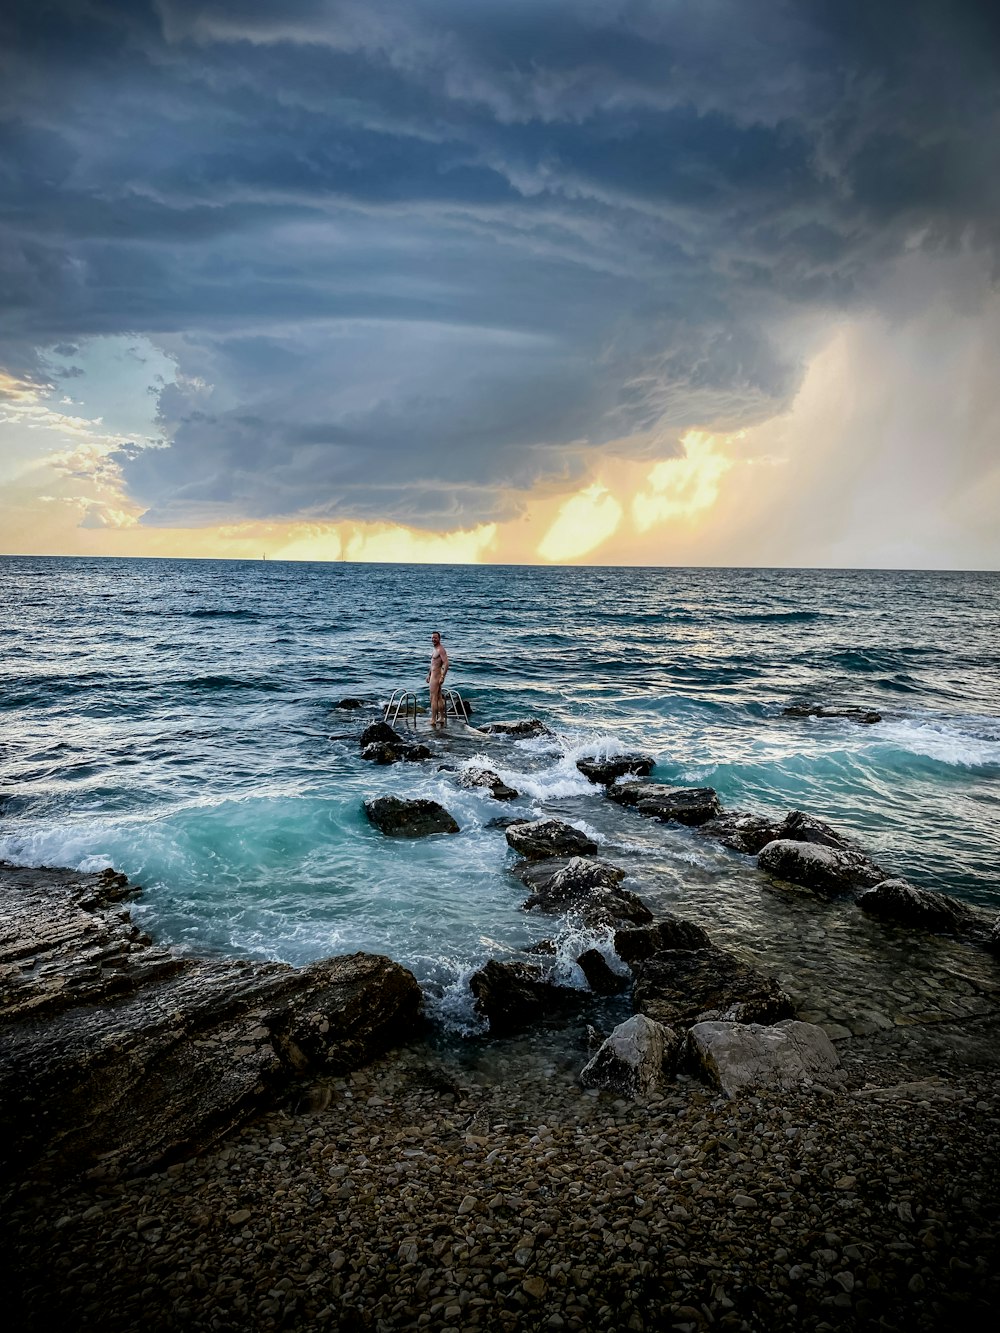 personne debout sur une formation rocheuse dans la mer pendant la journée